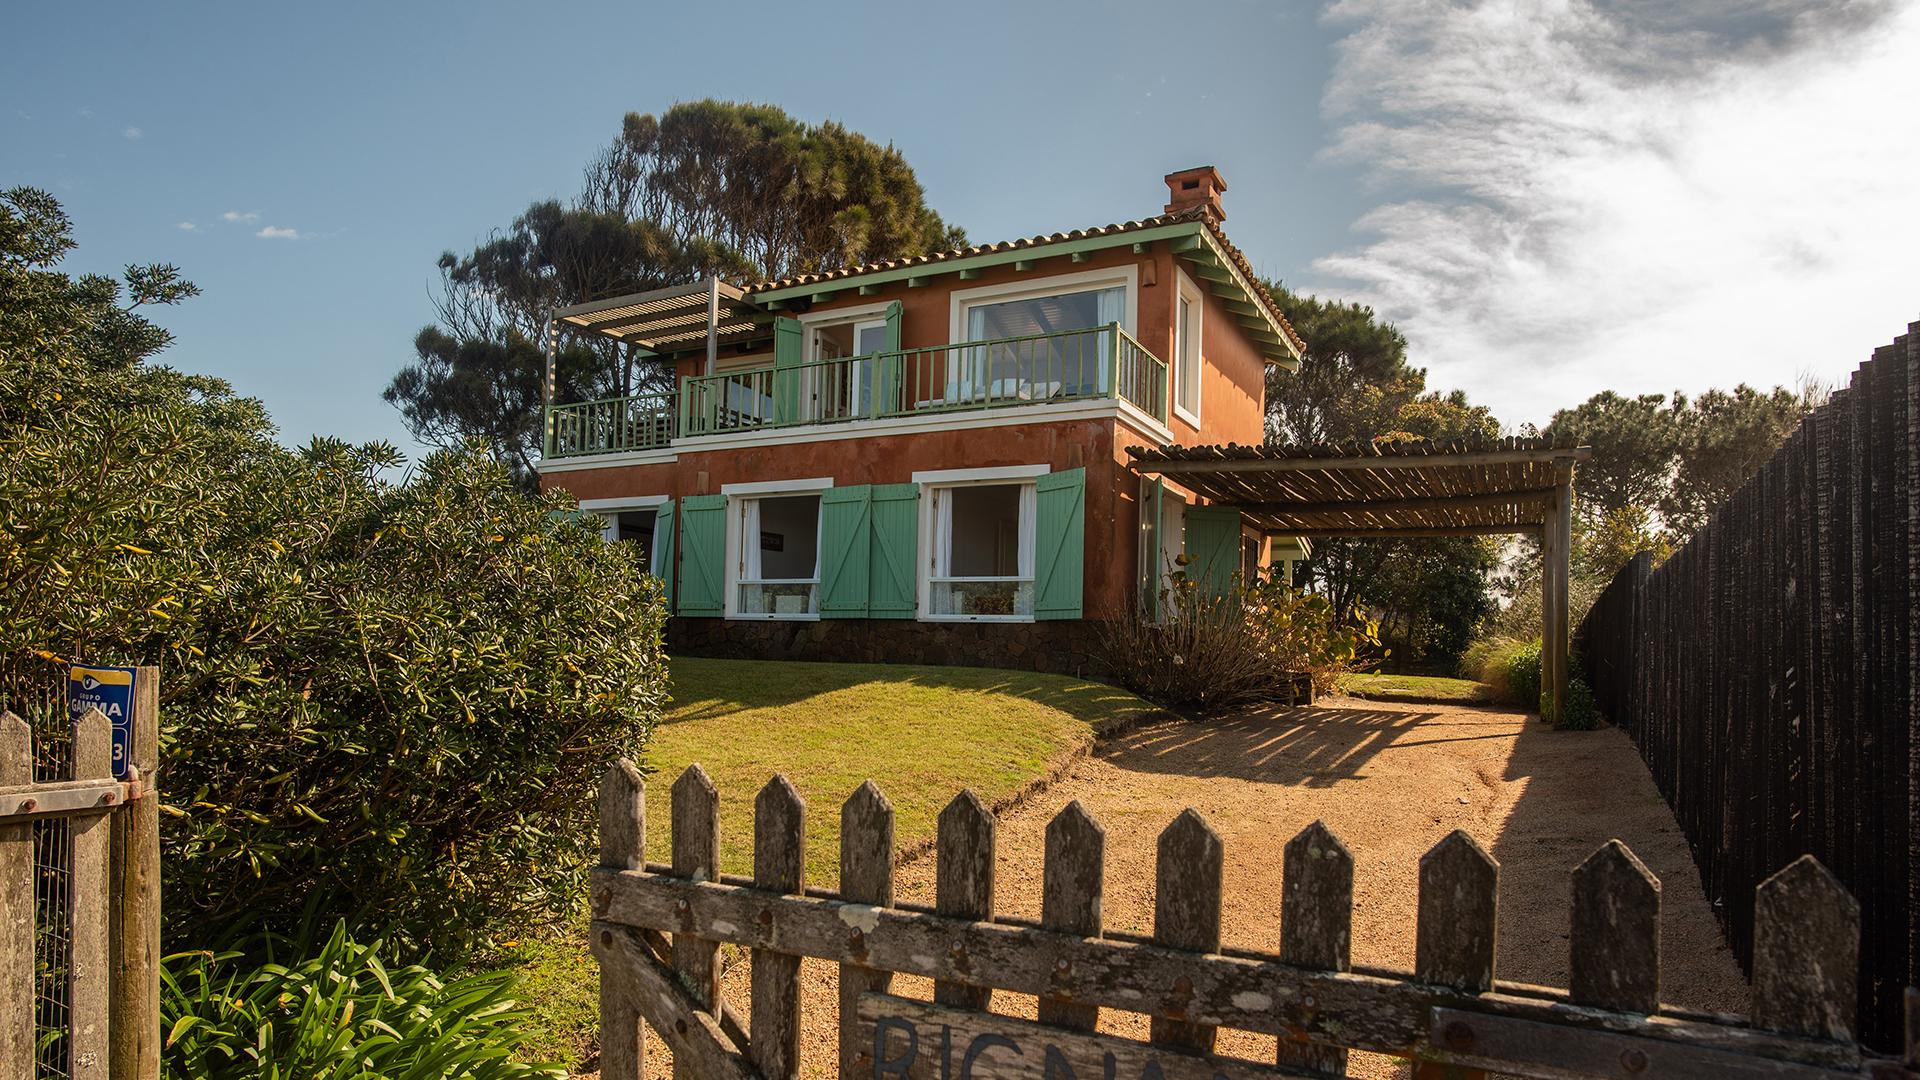 Front Row Ocean View Home located in Jose Ignacio, Punta del Este, Uruguay, listed by Curiocity Villas.